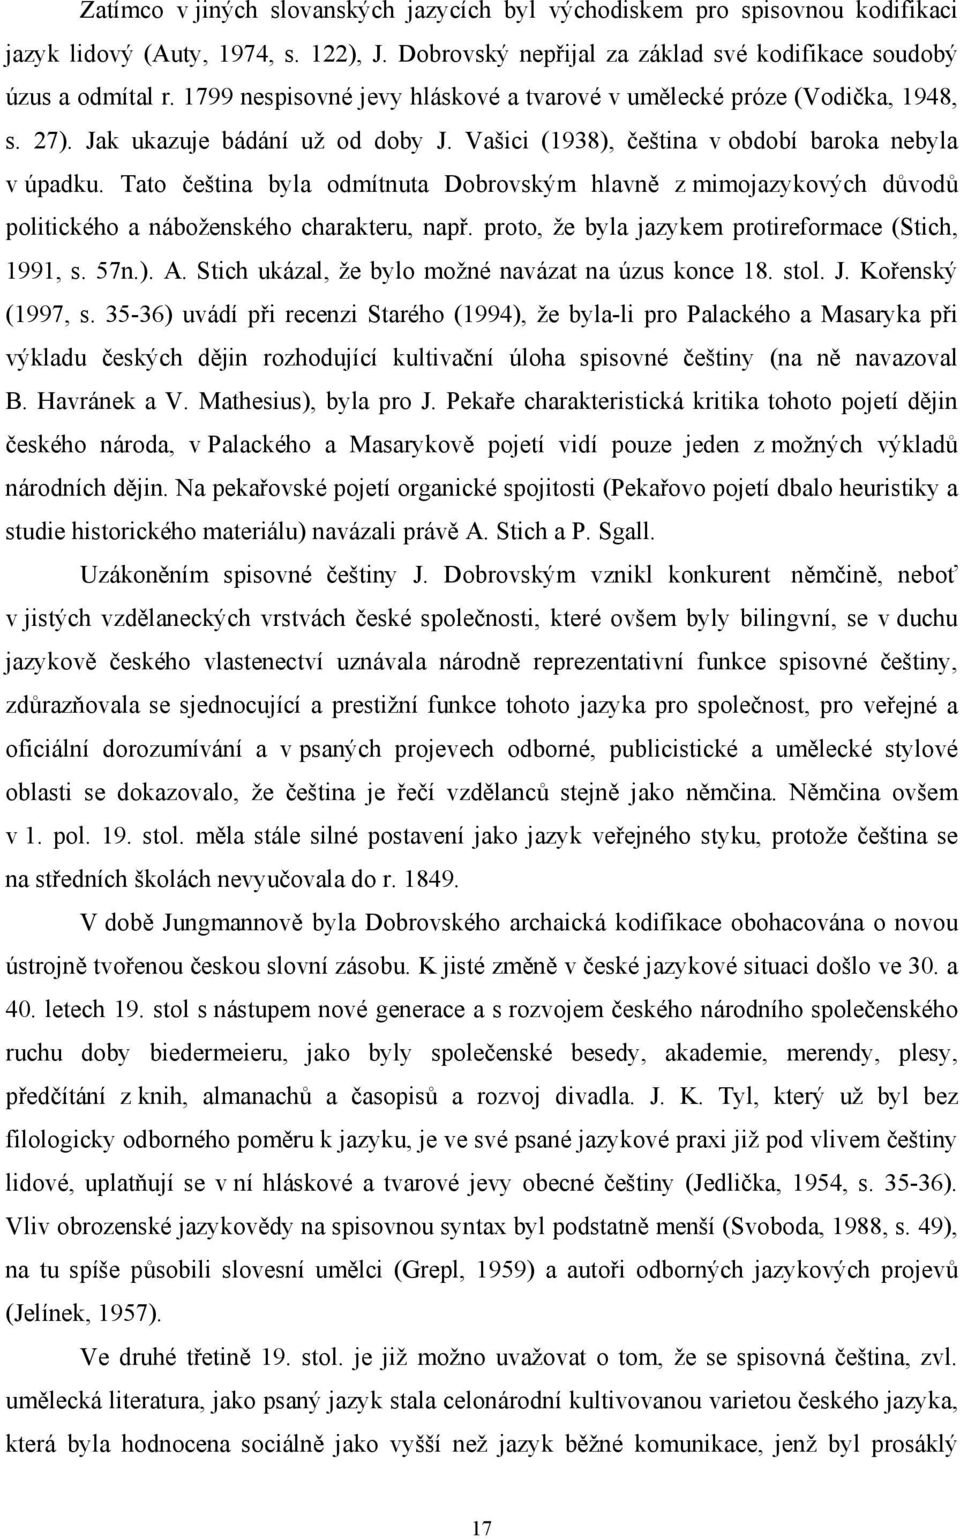 Tato čeština byla odmítnuta Dobrovským hlavně z mimojazykových důvodů politického a náboženského charakteru, např. proto, že byla jazykem protireformace (Stich, 1991, s. 57n.). A.